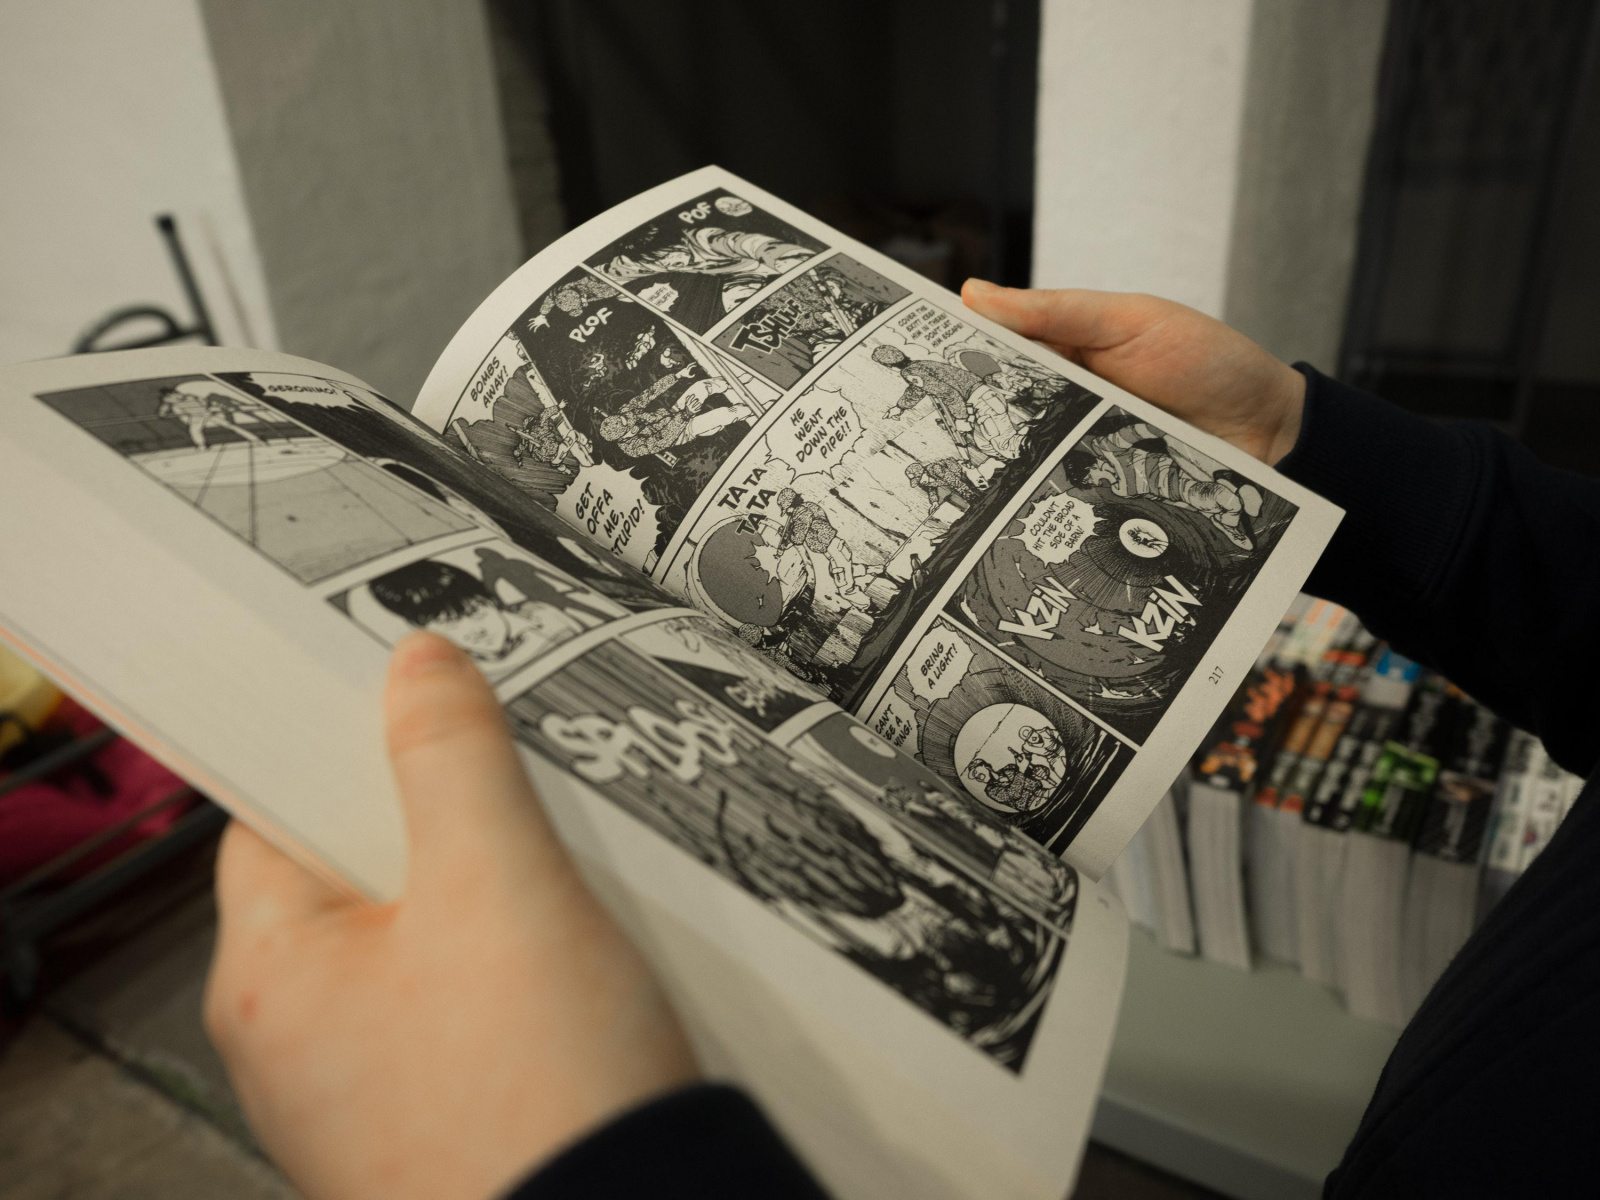 One Piece, Demon Slayer les 12 livres les plus achetés avec le Pass  Culture sont des mangas